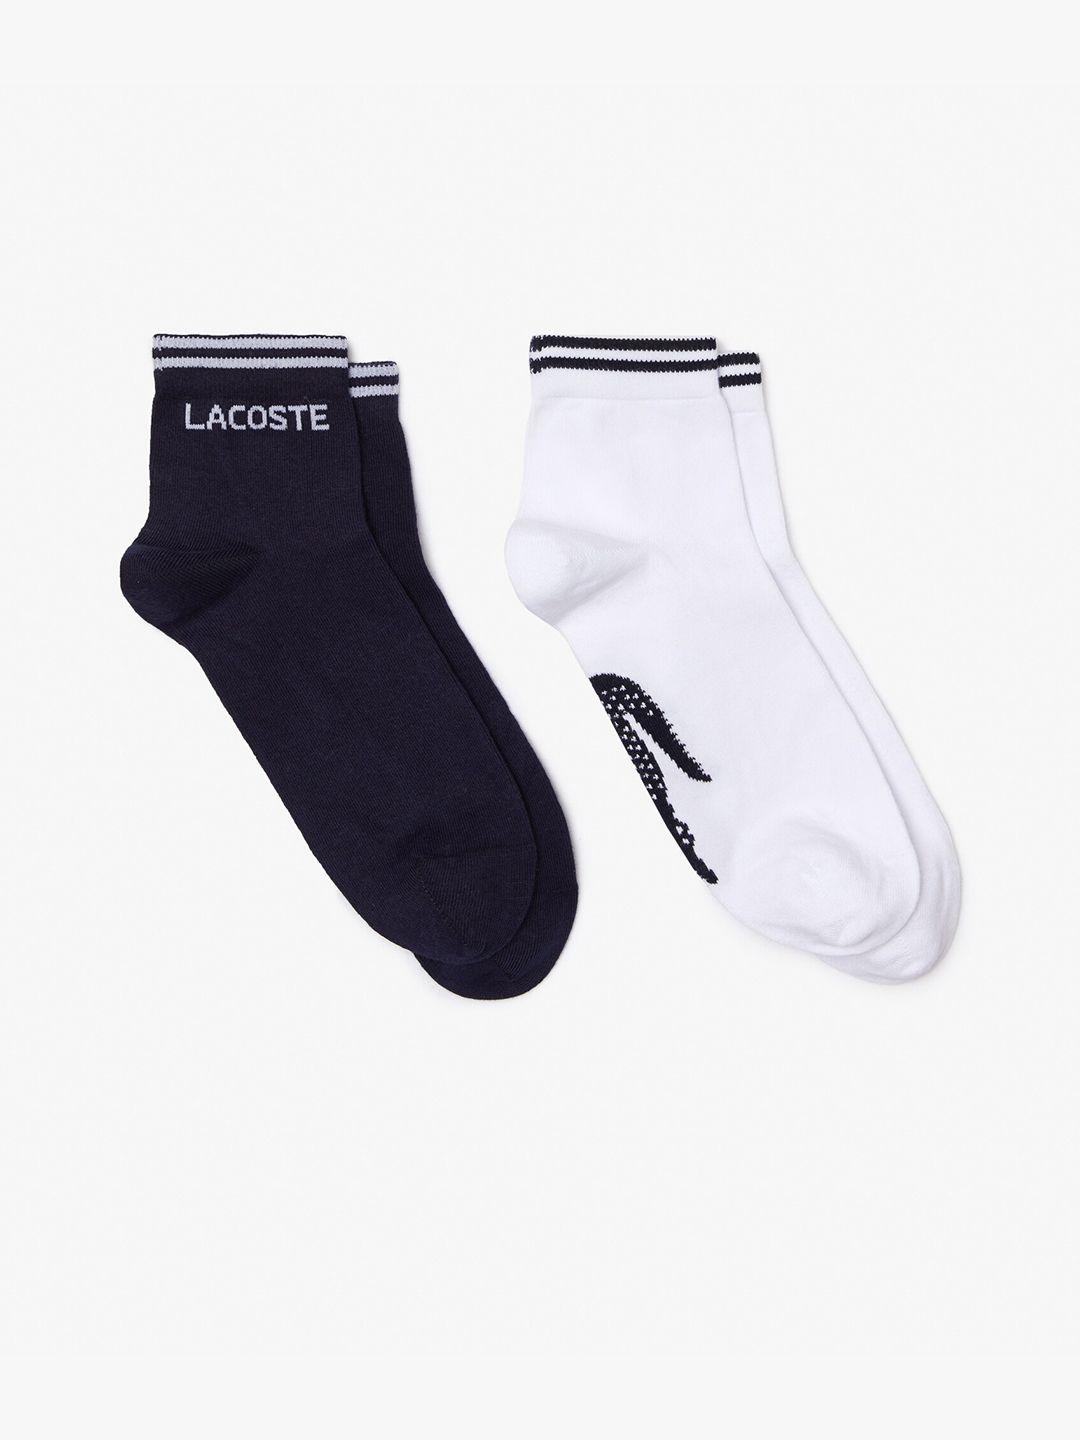 lacoste-men-pack-of-2-calf-length-sports-socks